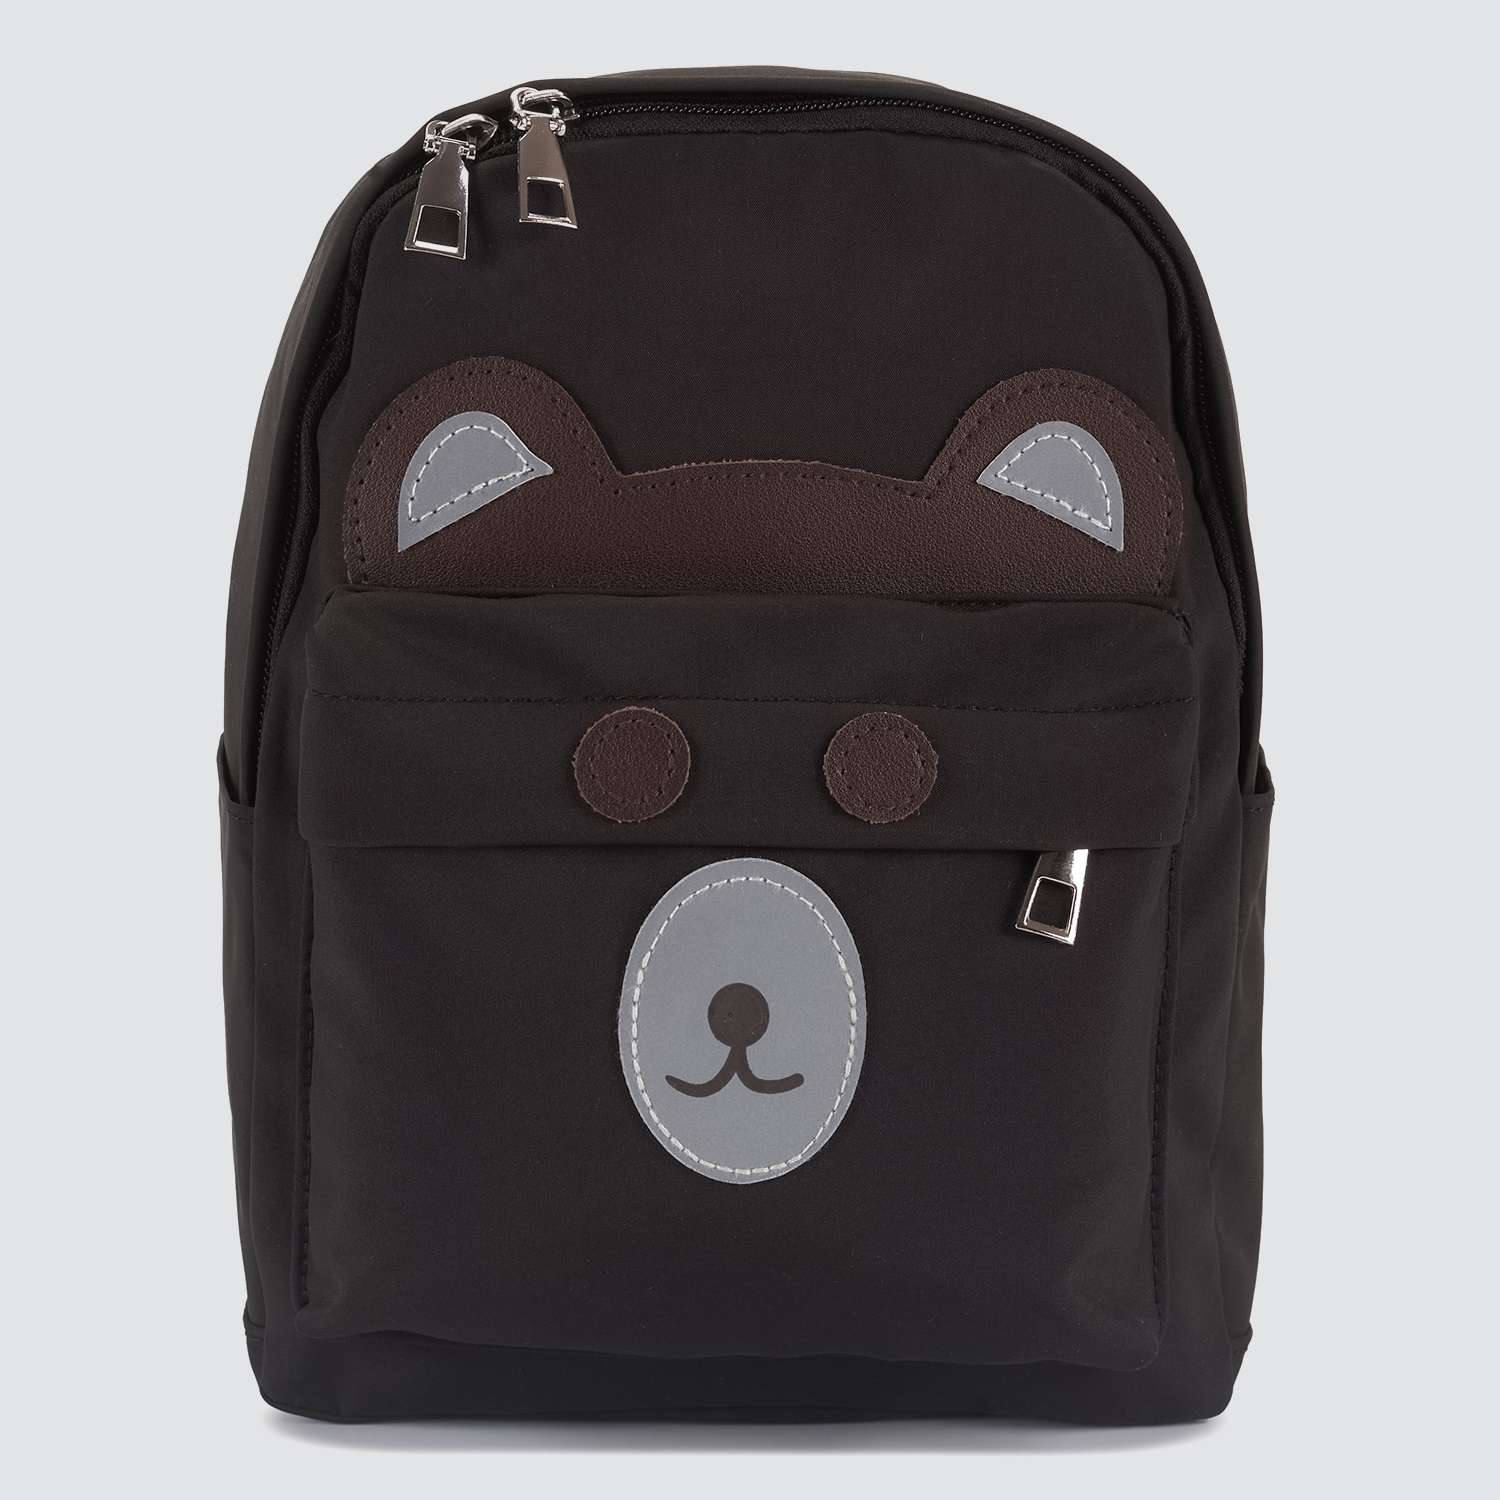 Детский рюкзак Journey 26801 черный медвежонок - фото 2